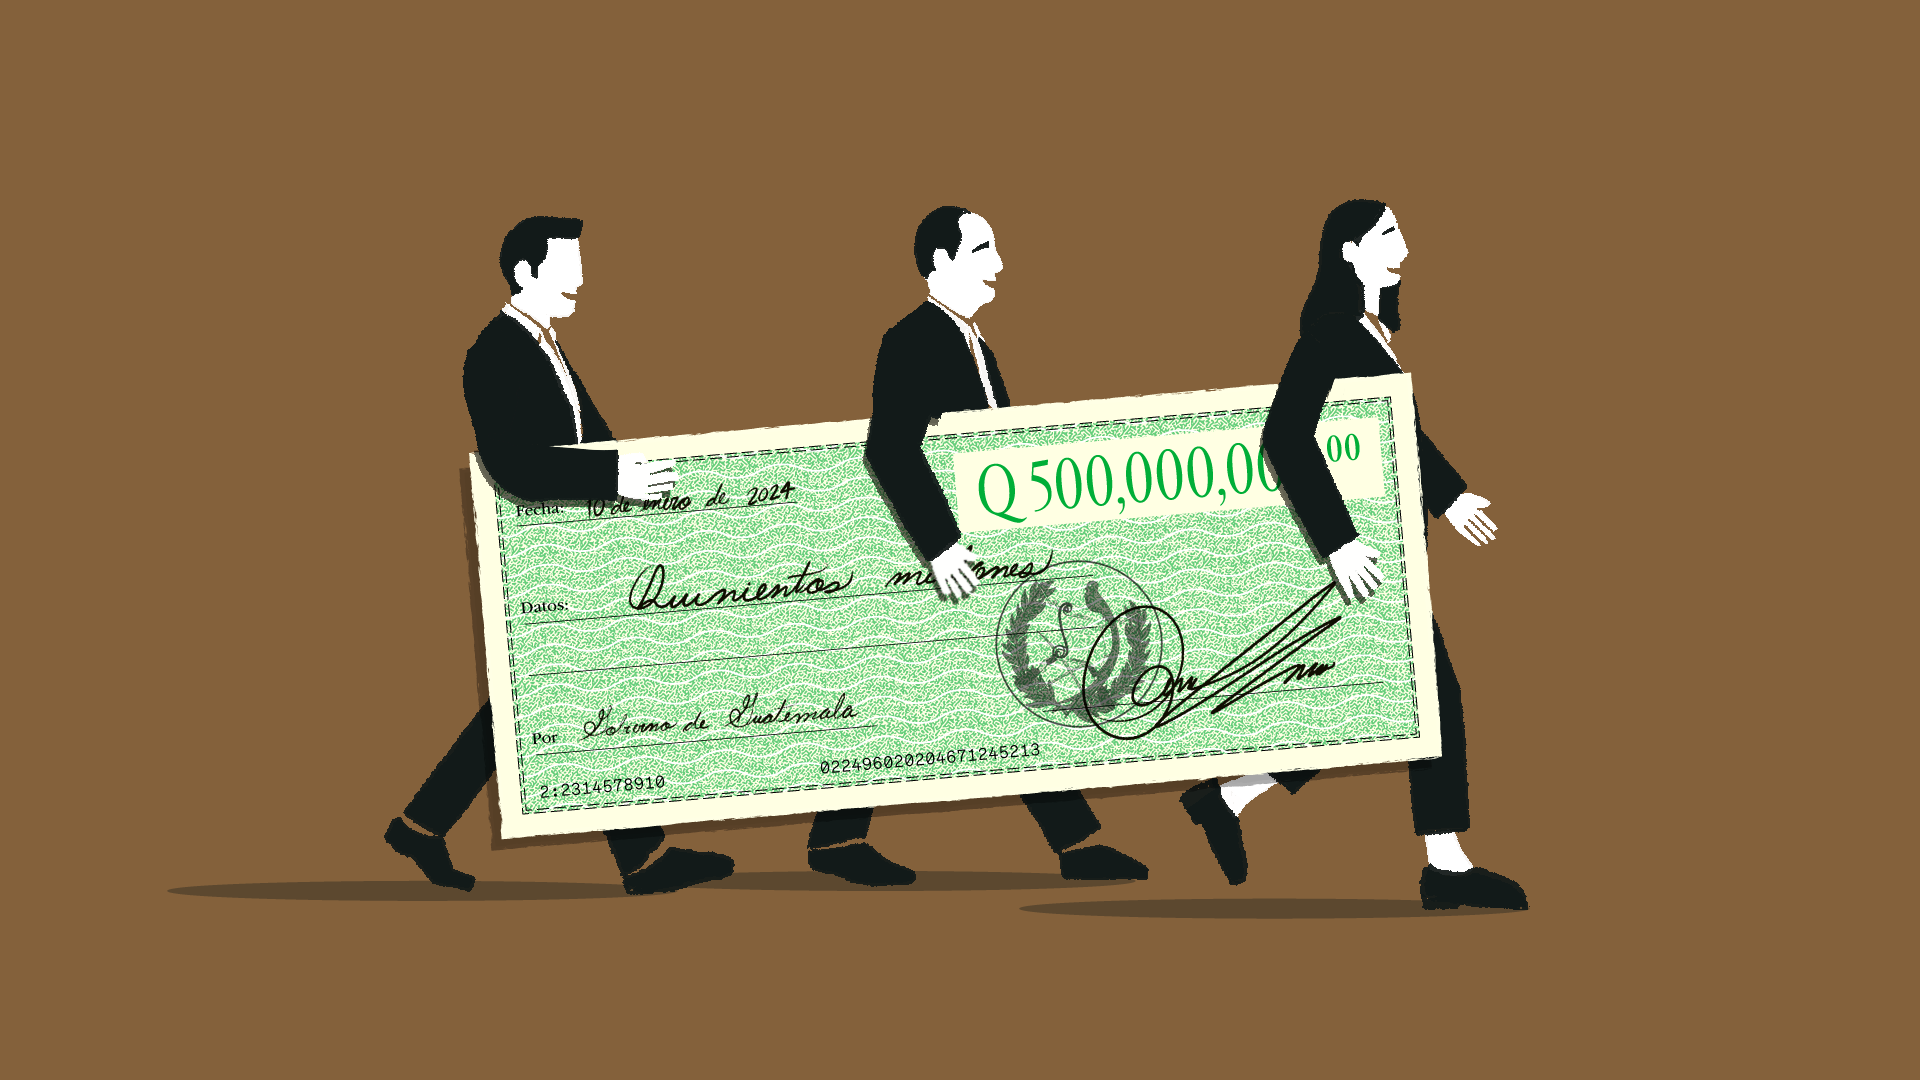 Ilustración sobre las indemnizaciones públicas que reciben los funcionarios en Guatemala. Ilustración: Diego Orellana.